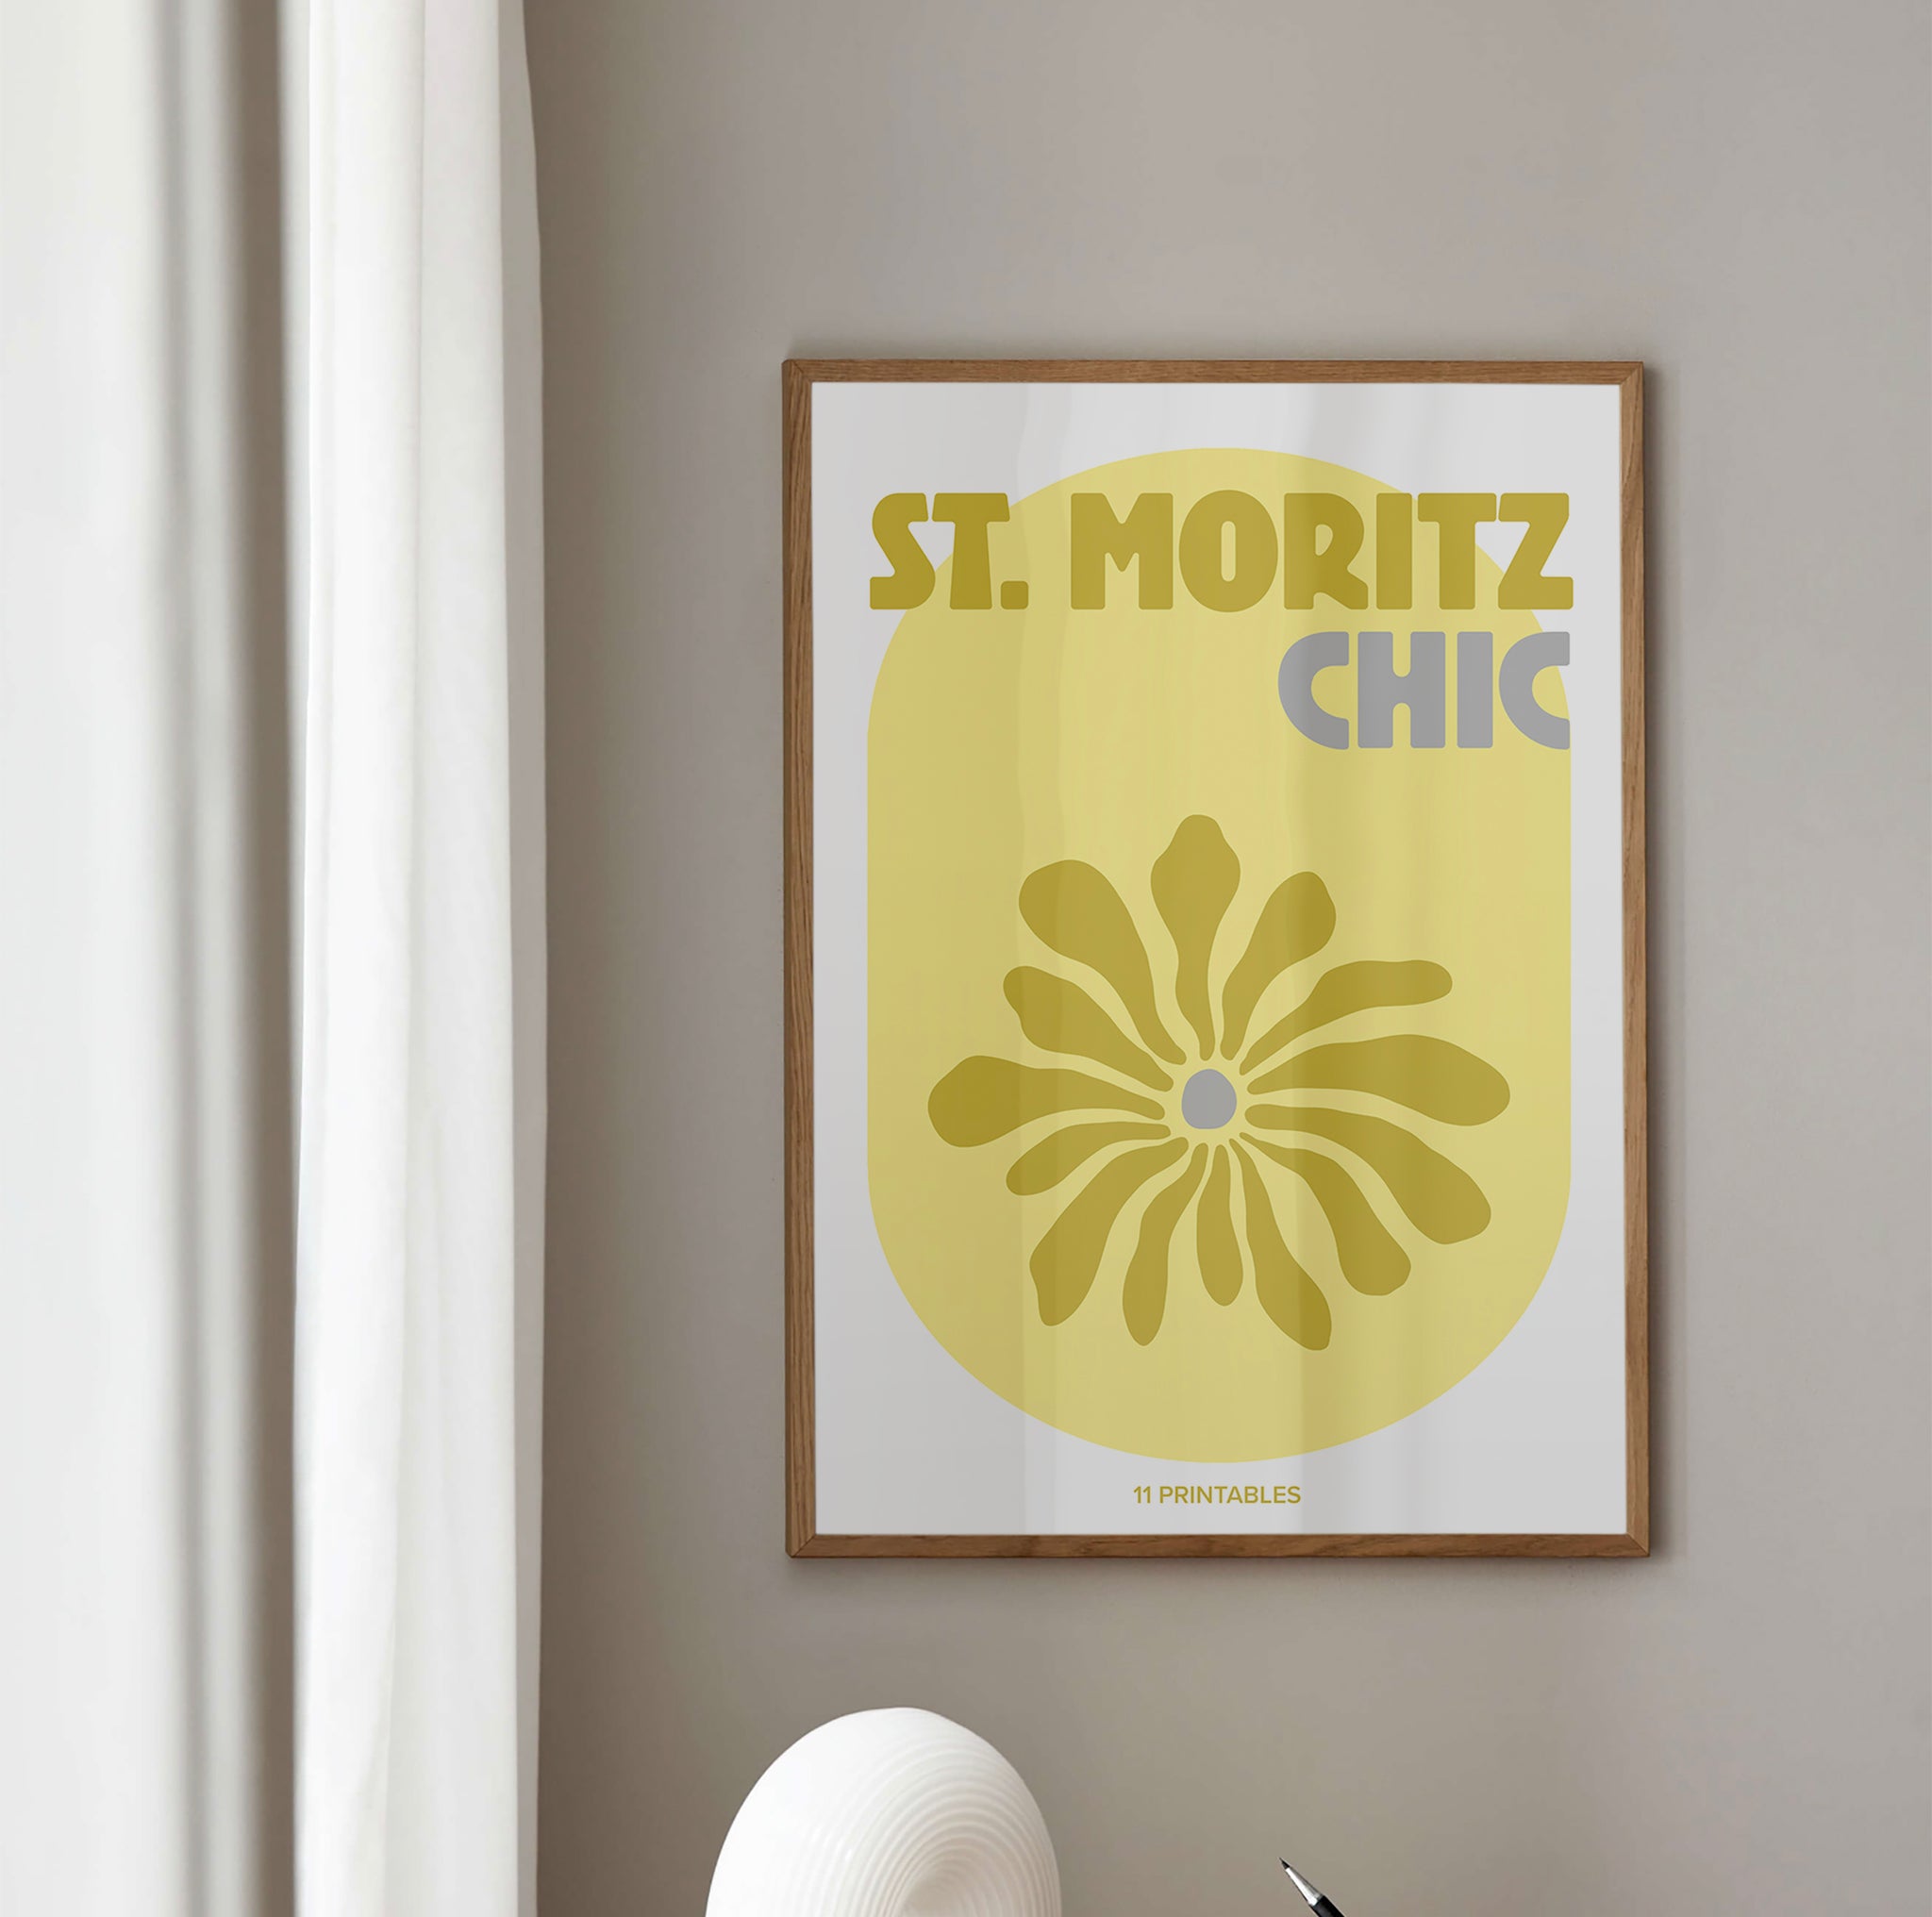 St. Moritz Chic Yellow & White Poster